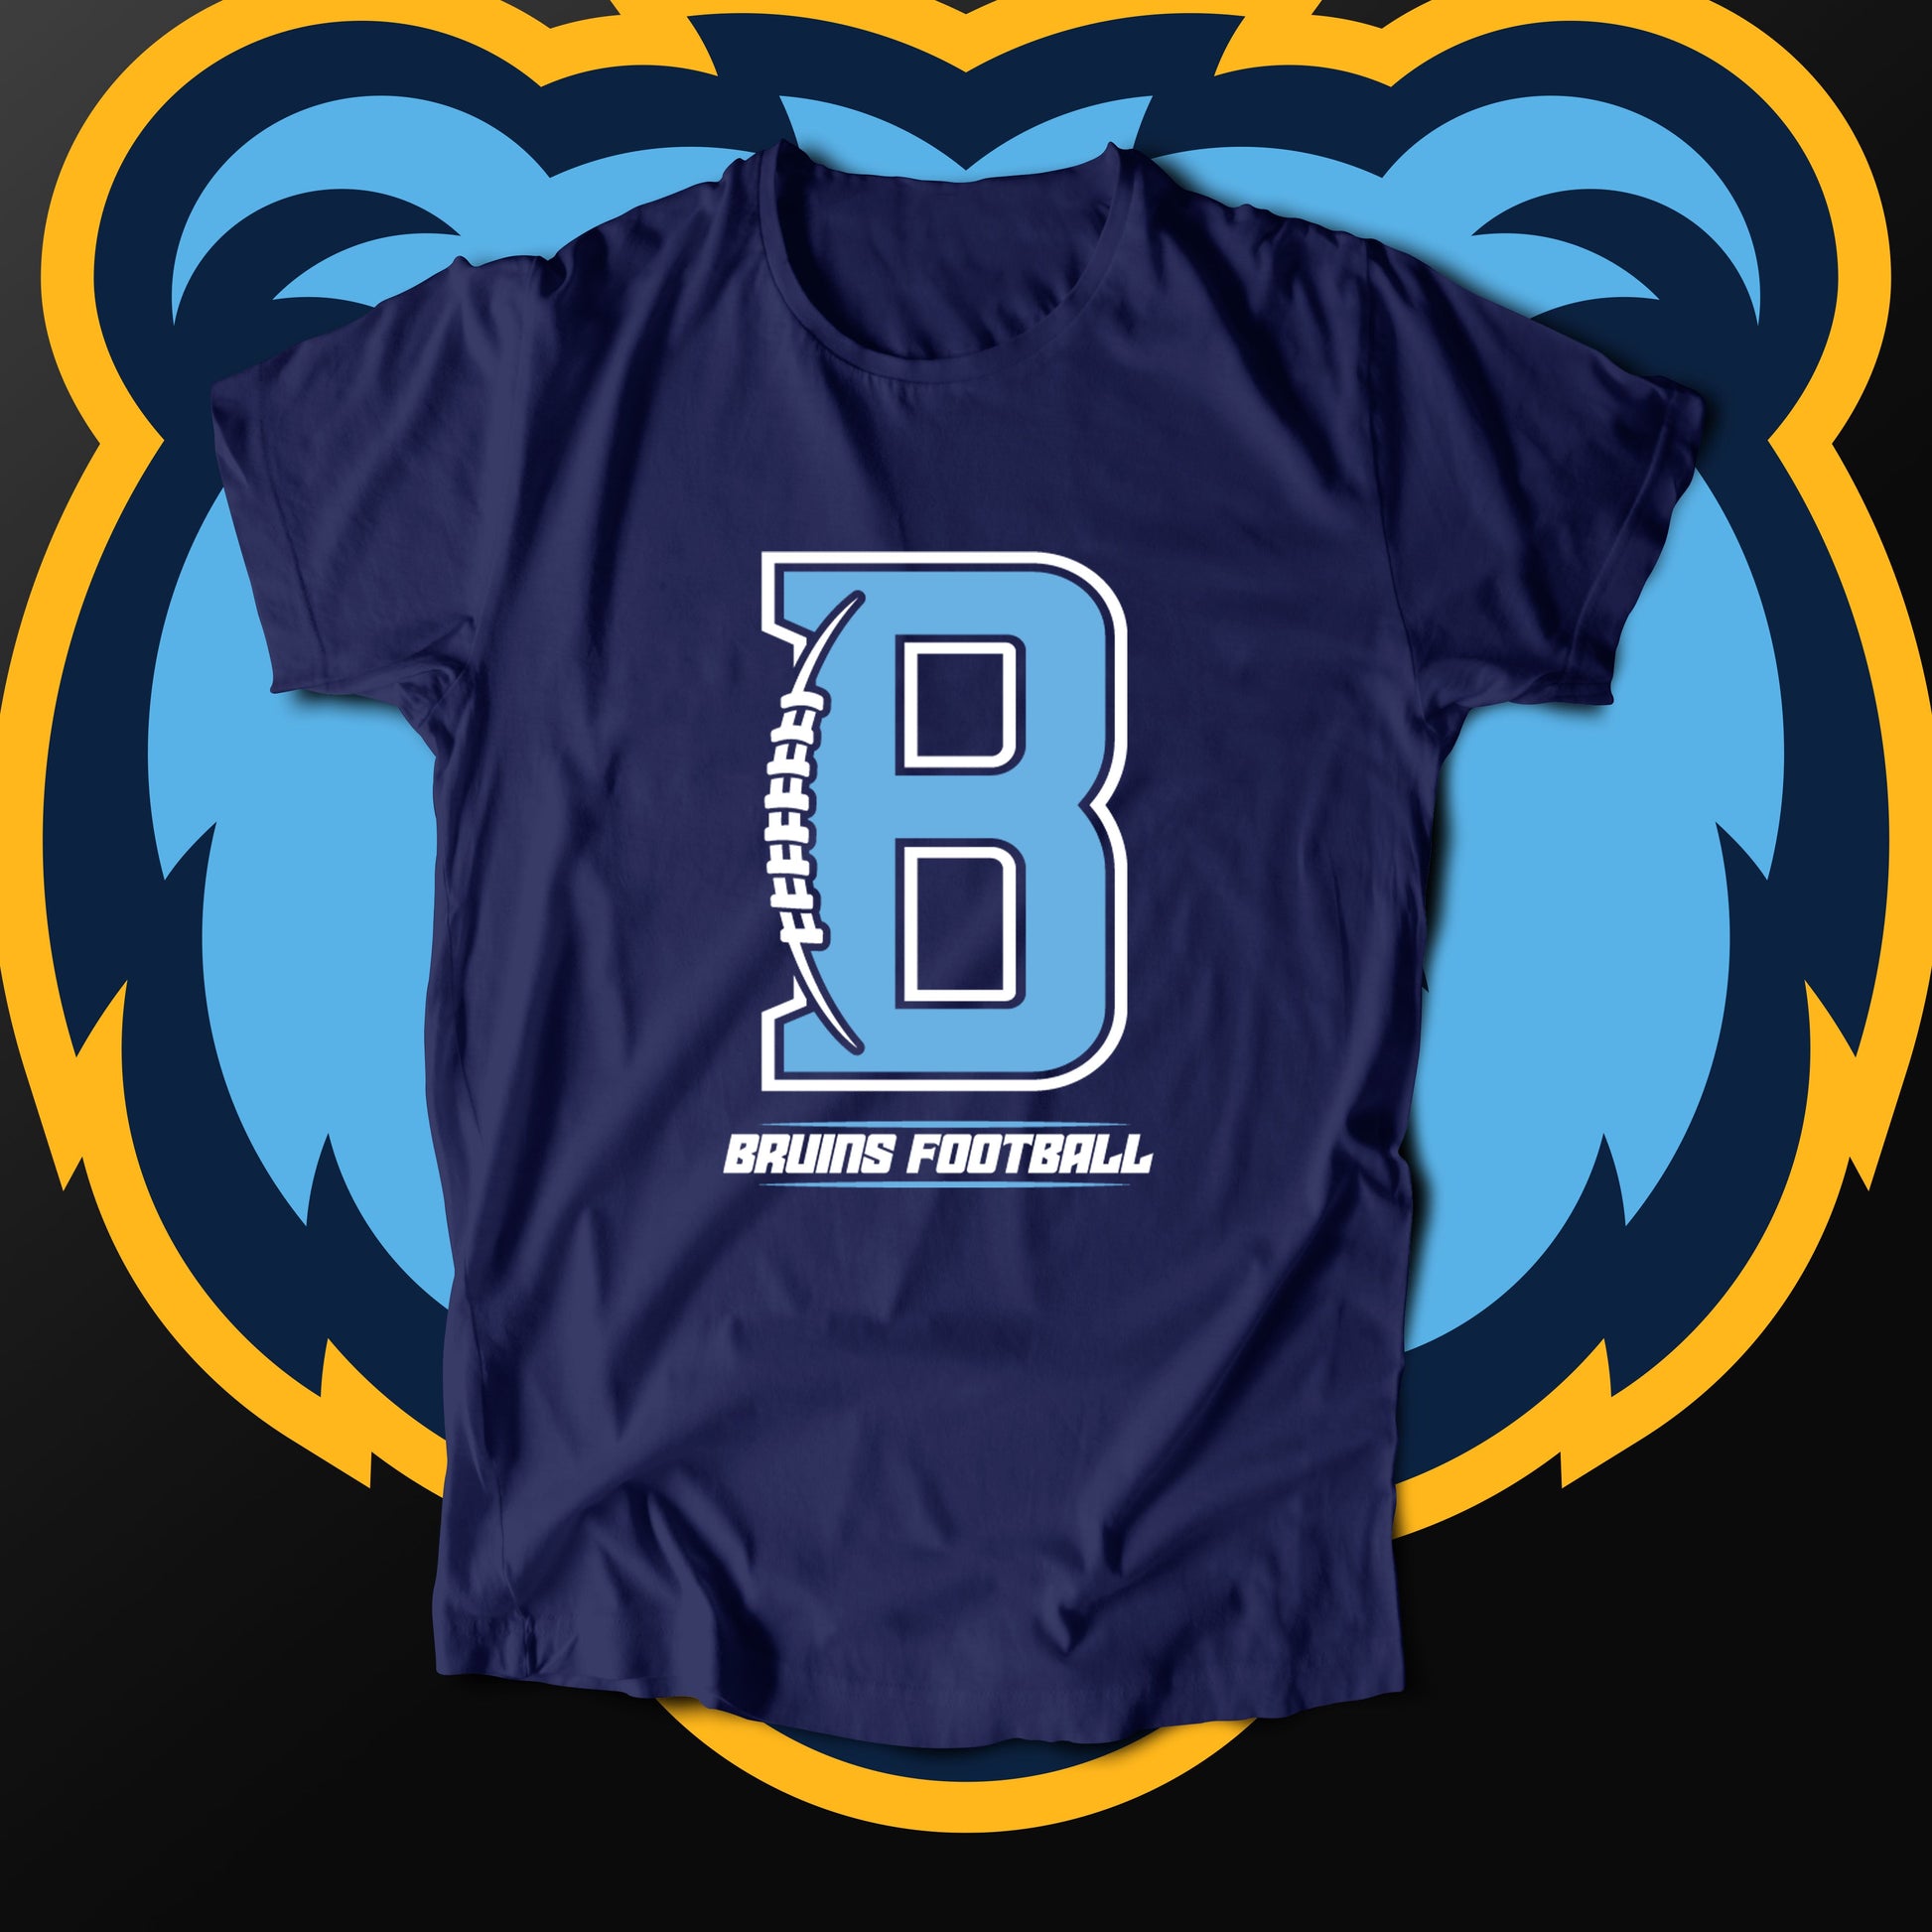 Bruins "B" Football (T-Shirt)-DaPrintFactory